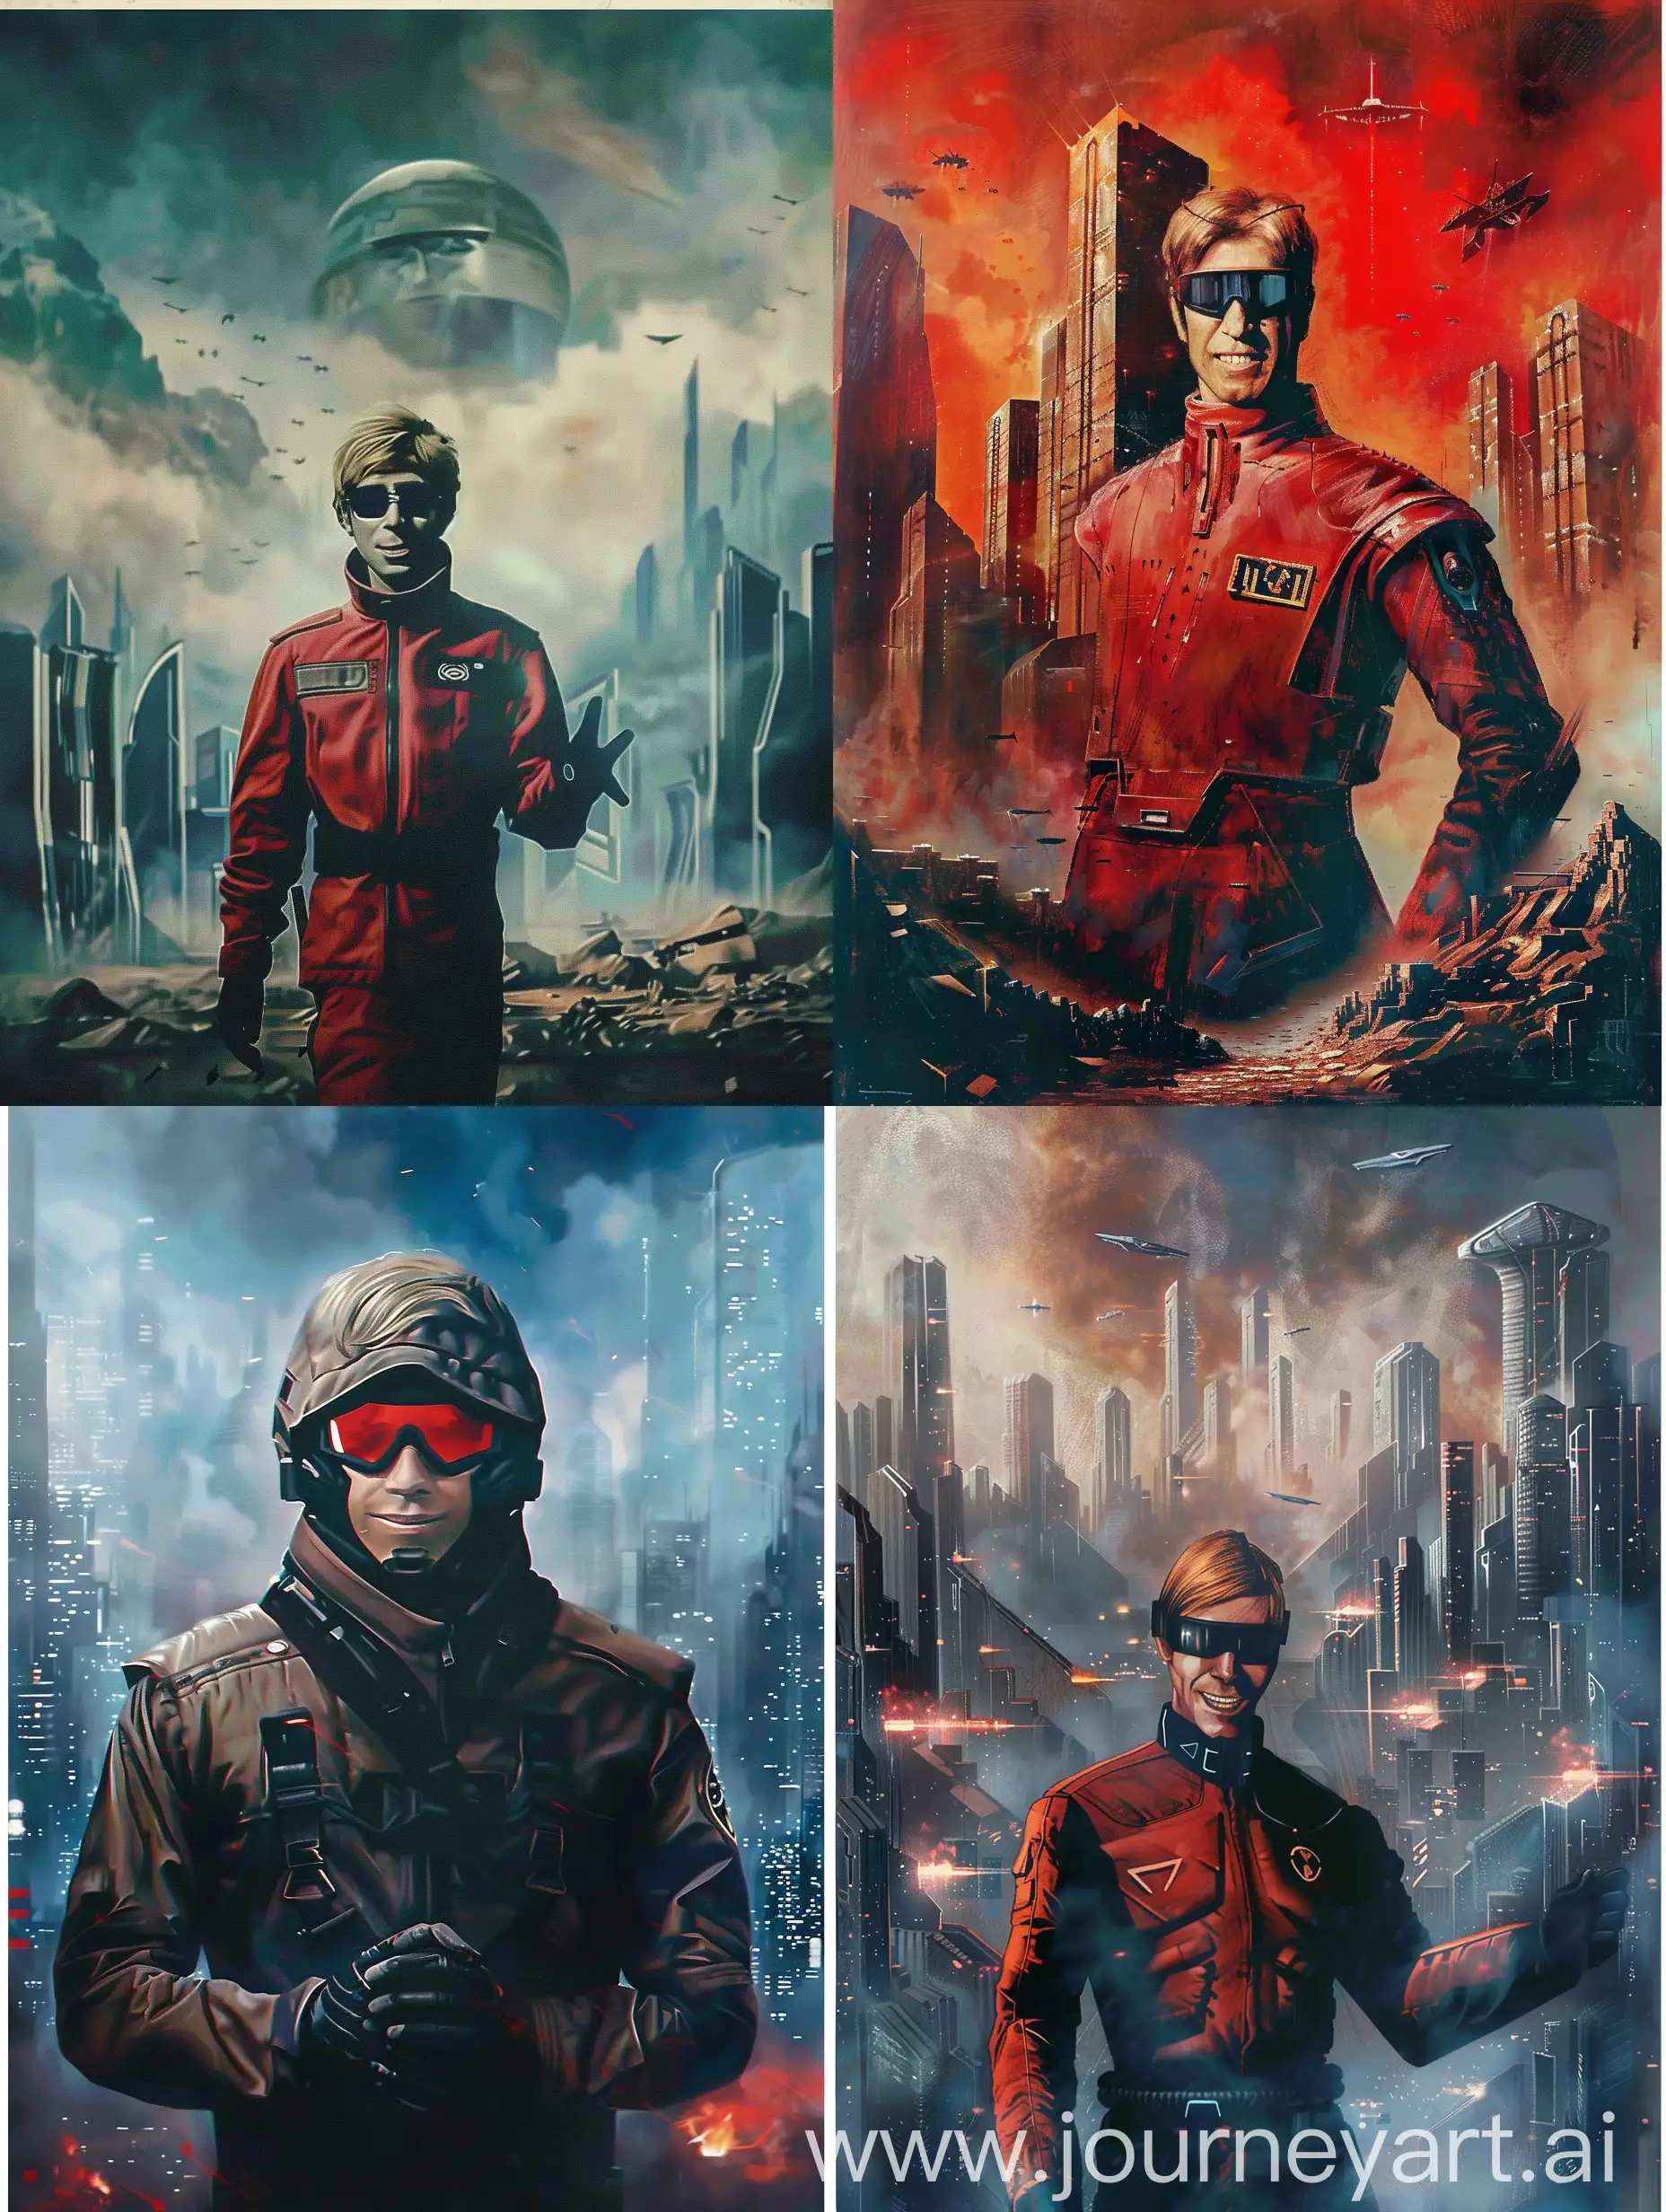 Dystopian-Poster-Futuristic-Portrait-of-Desolation-and-Rebellion